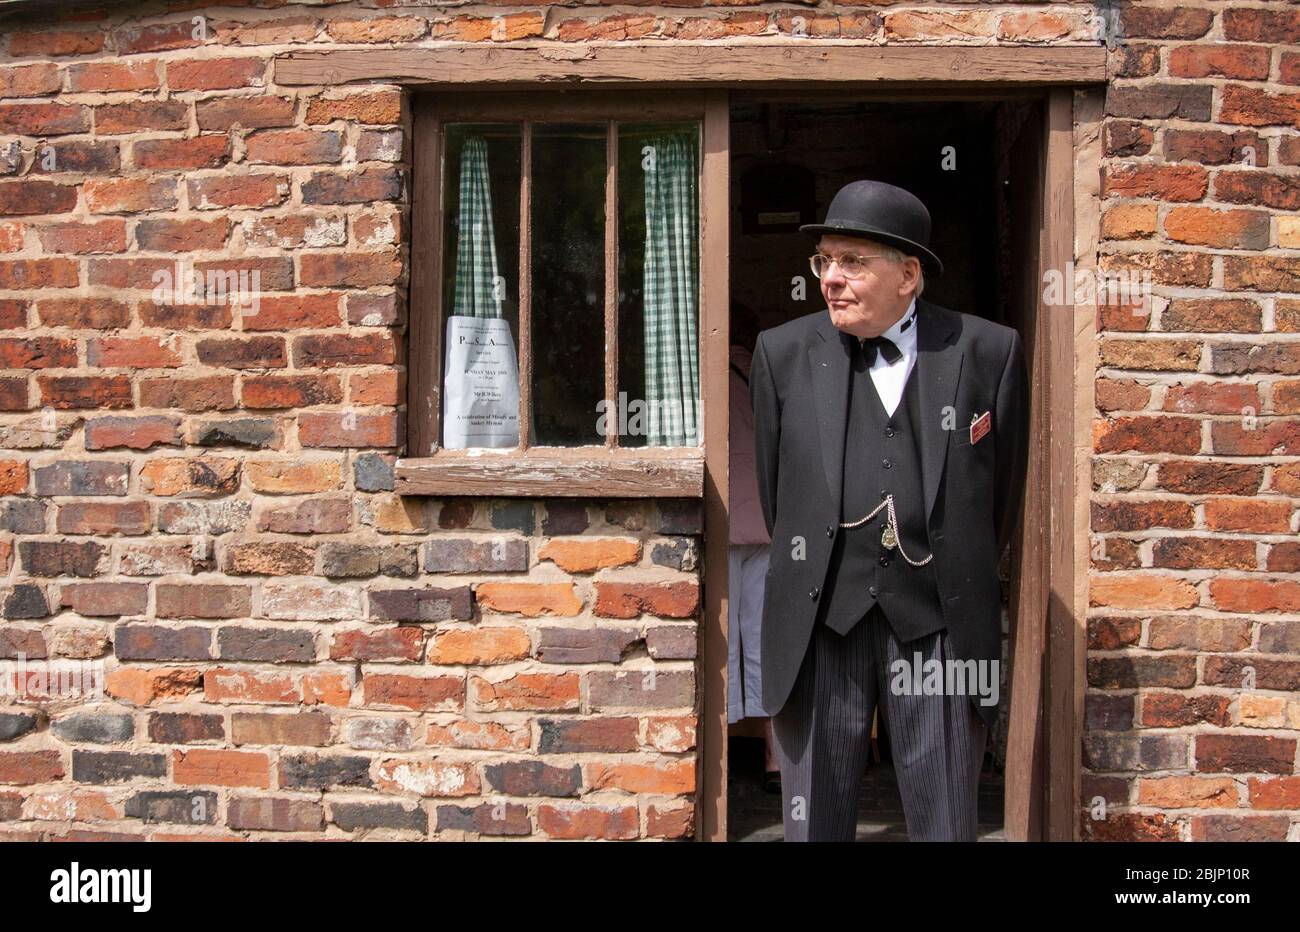 Uomo anziano, vestito con autentici abiti degli anni '40, si trovava nella porta posteriore di una casa di mattoni rossi. Birmingham, Inghilterra, Regno Unito Foto Stock